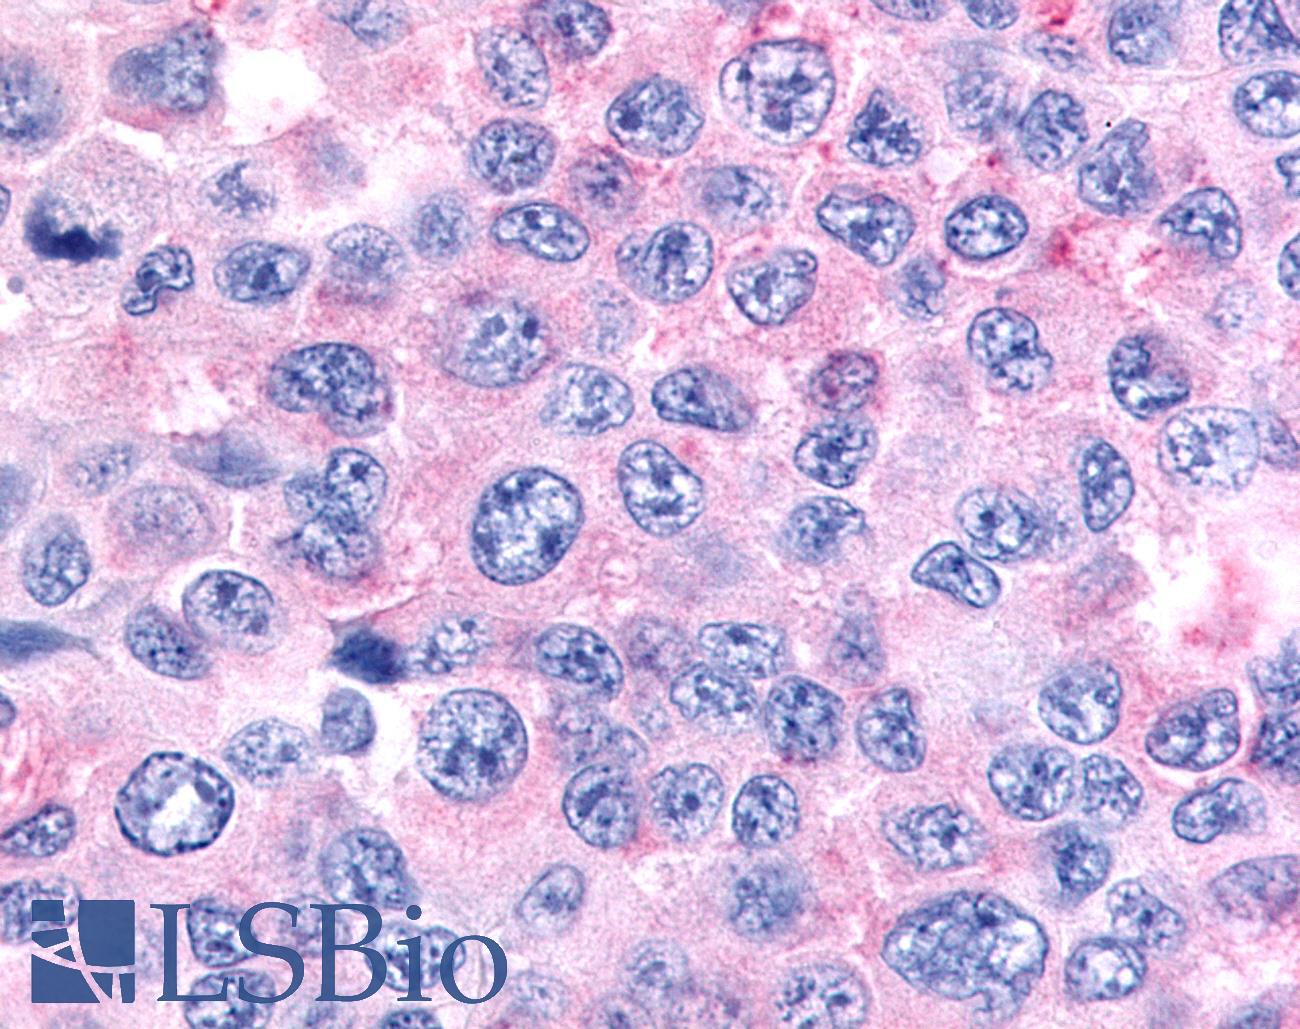 NR6A1 / GCNF Antibody - Skin, Melanoma